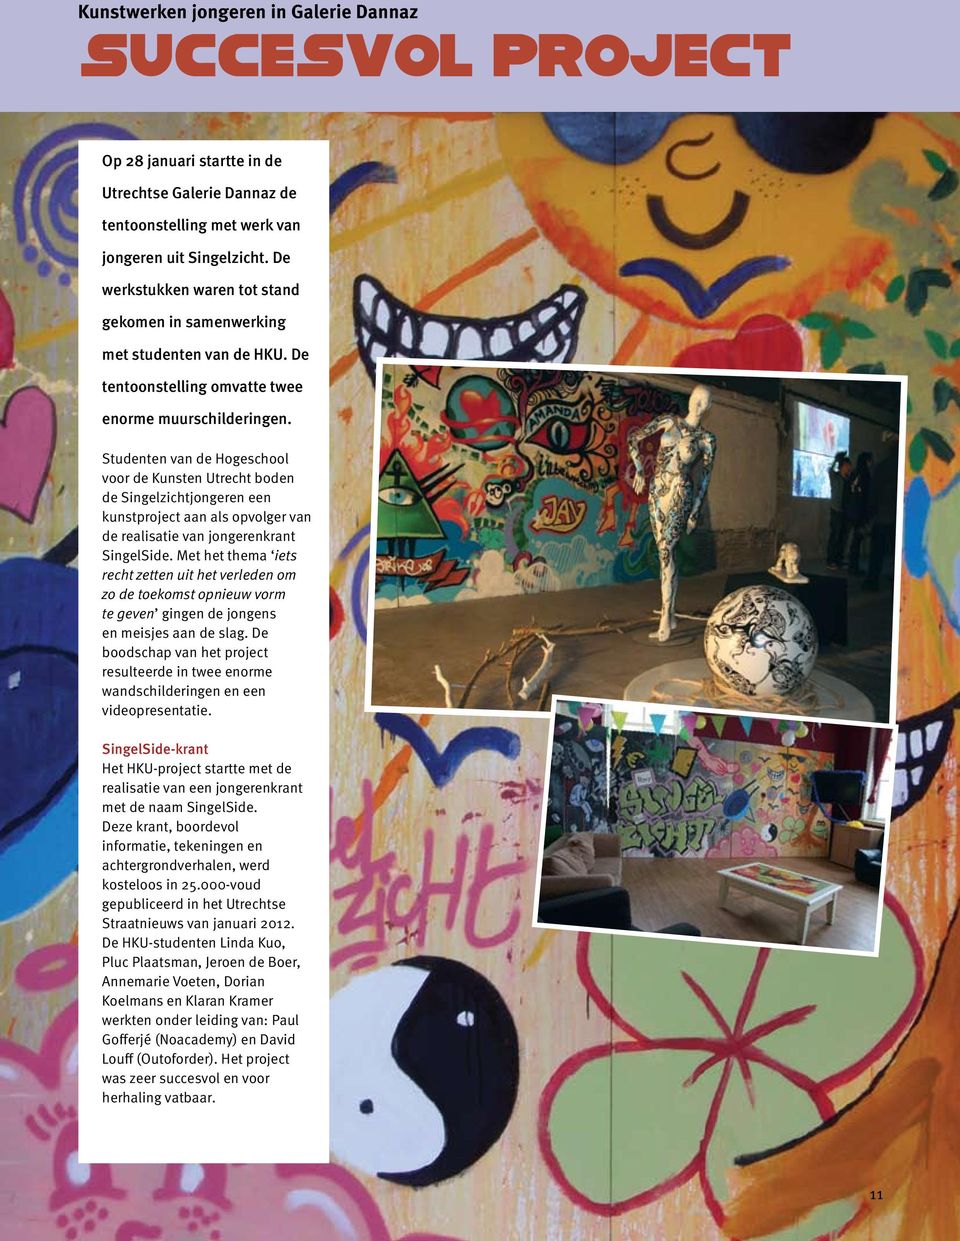 Studenten van de Hogeschool voor de Kunsten Utrecht boden de Singel zichtjongeren een kunstproject aan als opvolger van de realisatie van jongerenkrant SingelSide.